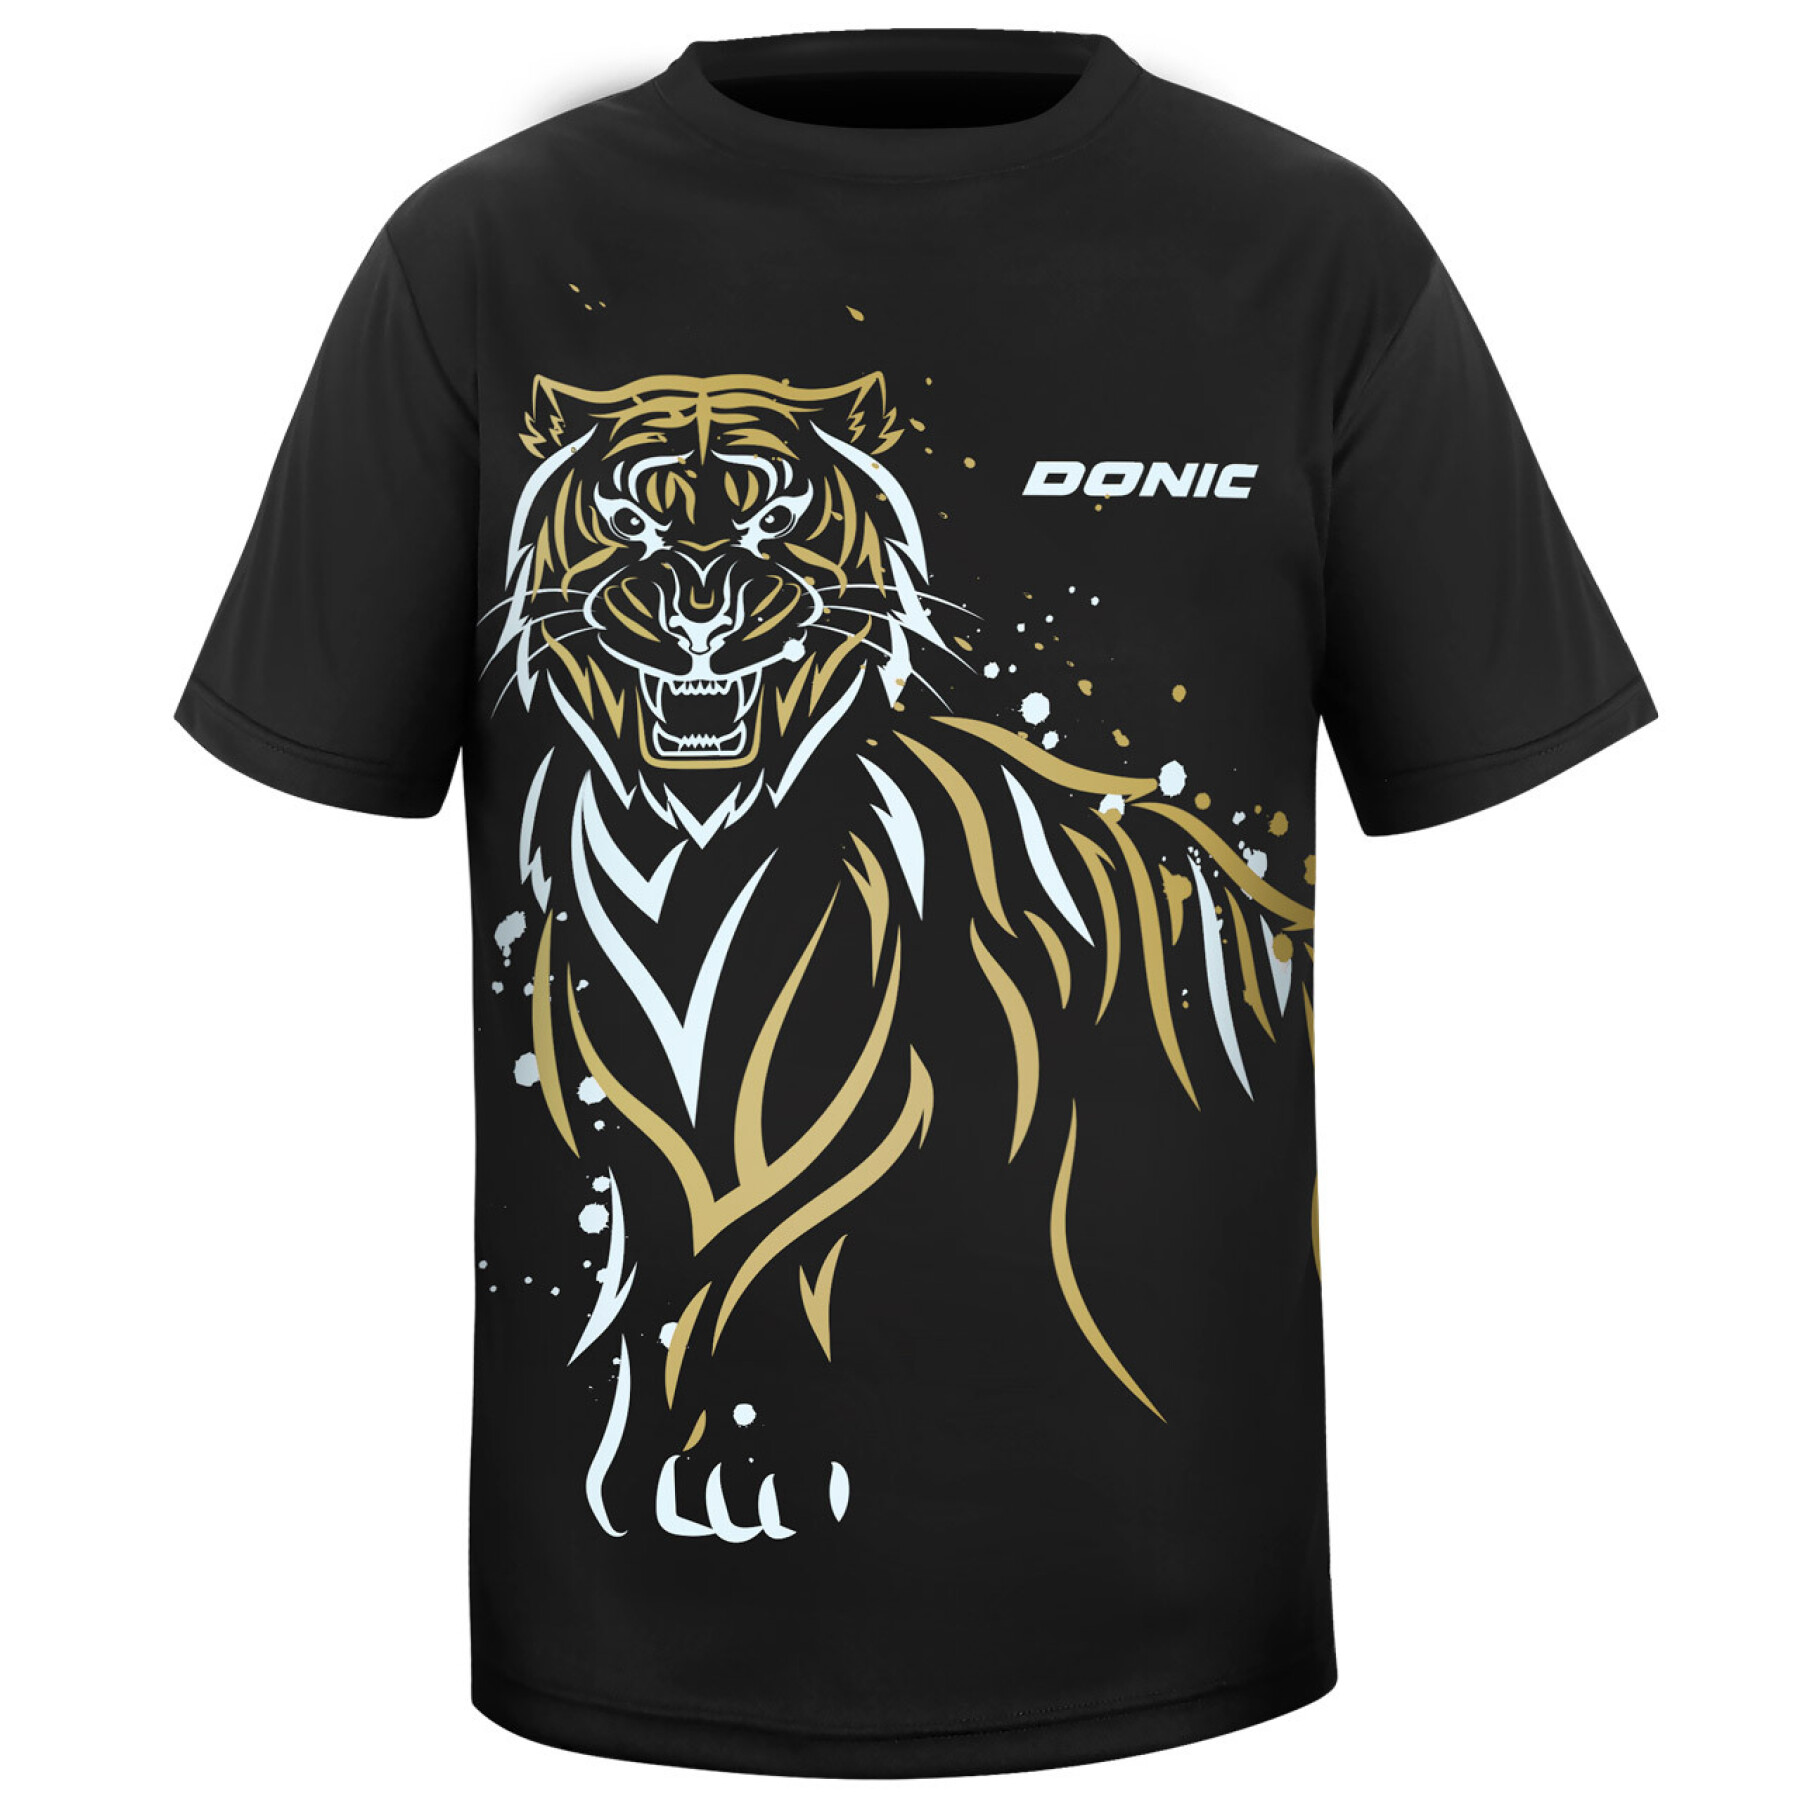 Kinder-T-shirt Donic Tiger